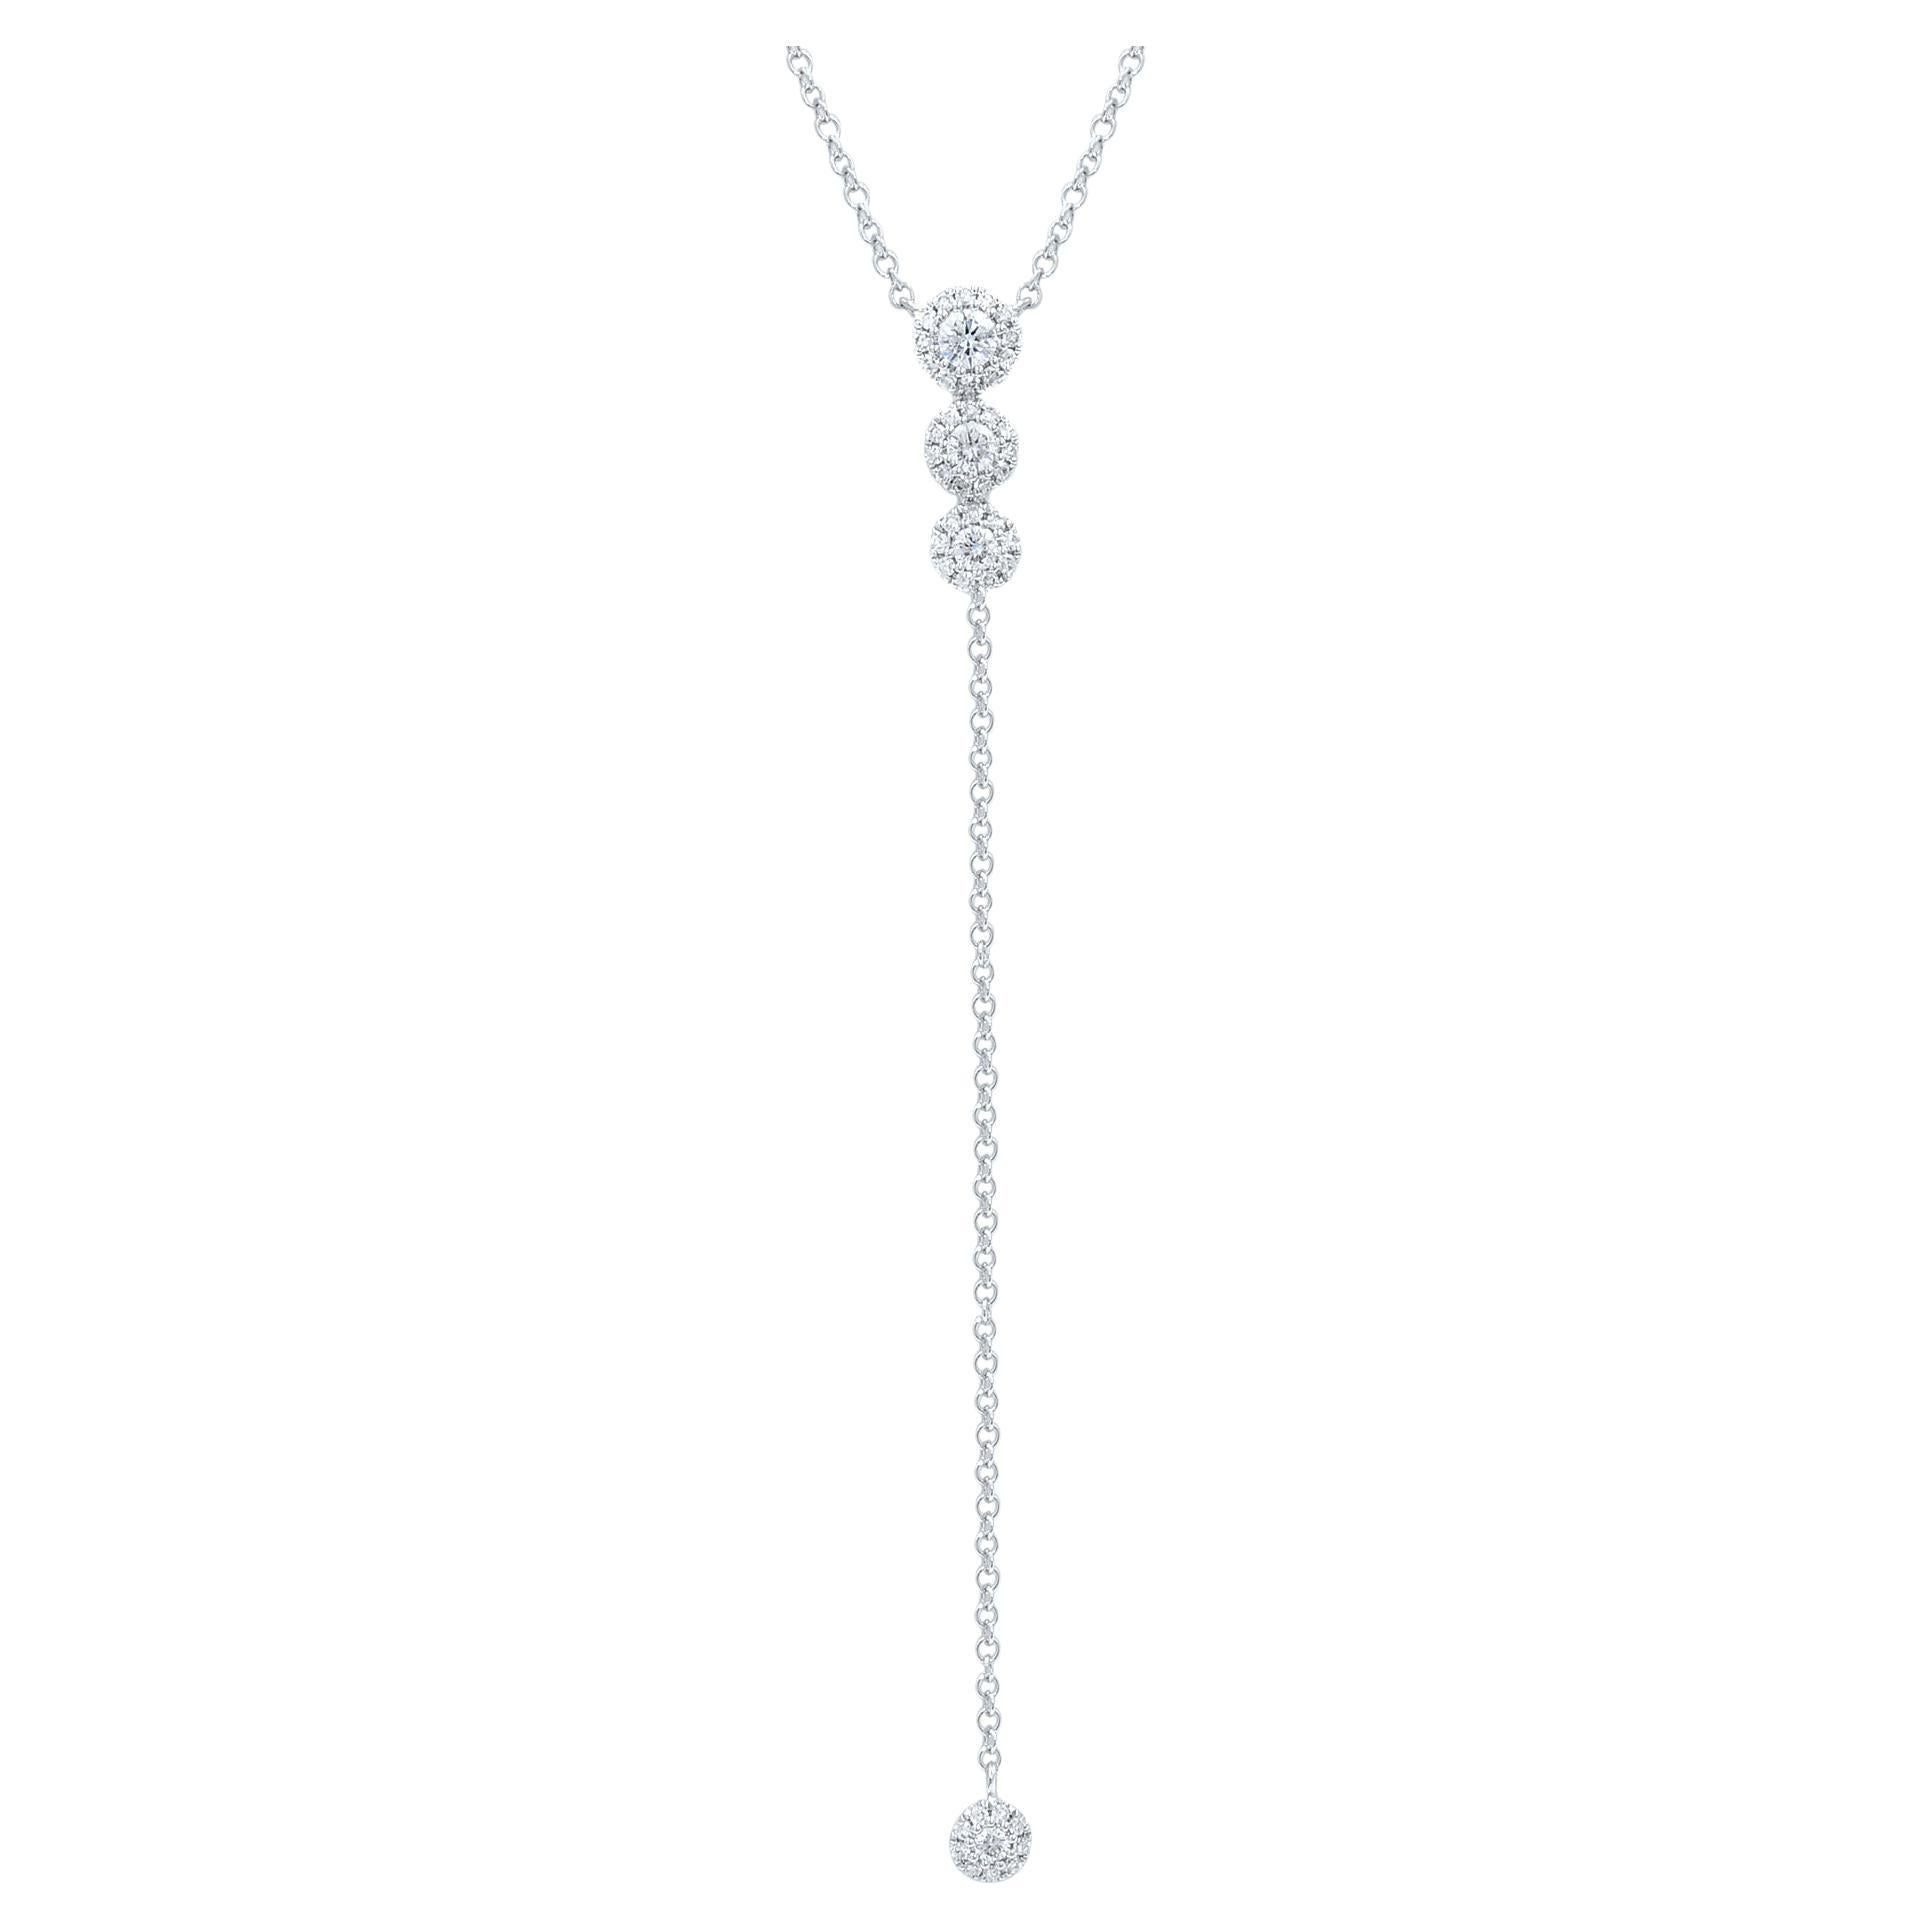 Rachel Koen Diamond Composite Lariat Necklace 14k White Gold 0.29cttw For Sale